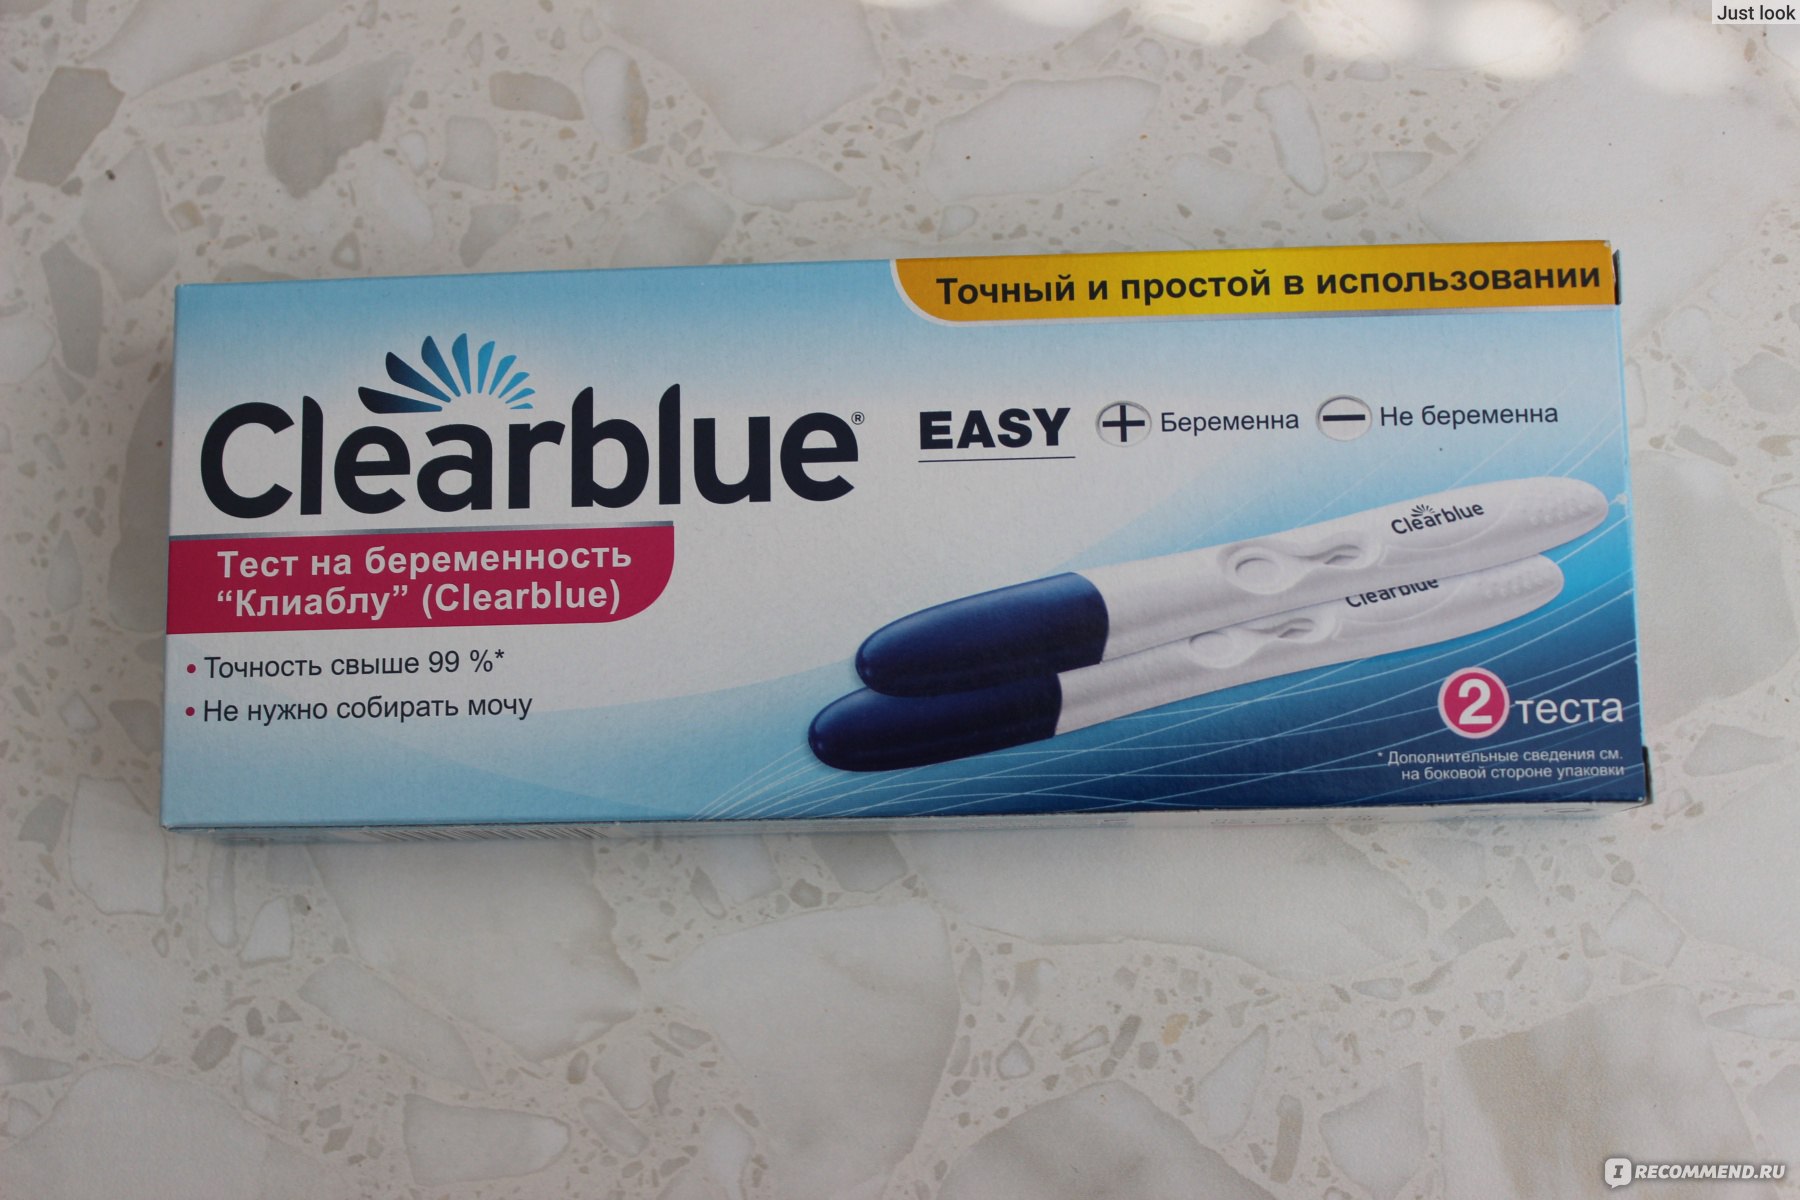 Тест на беременность электронный Clearblue положительный